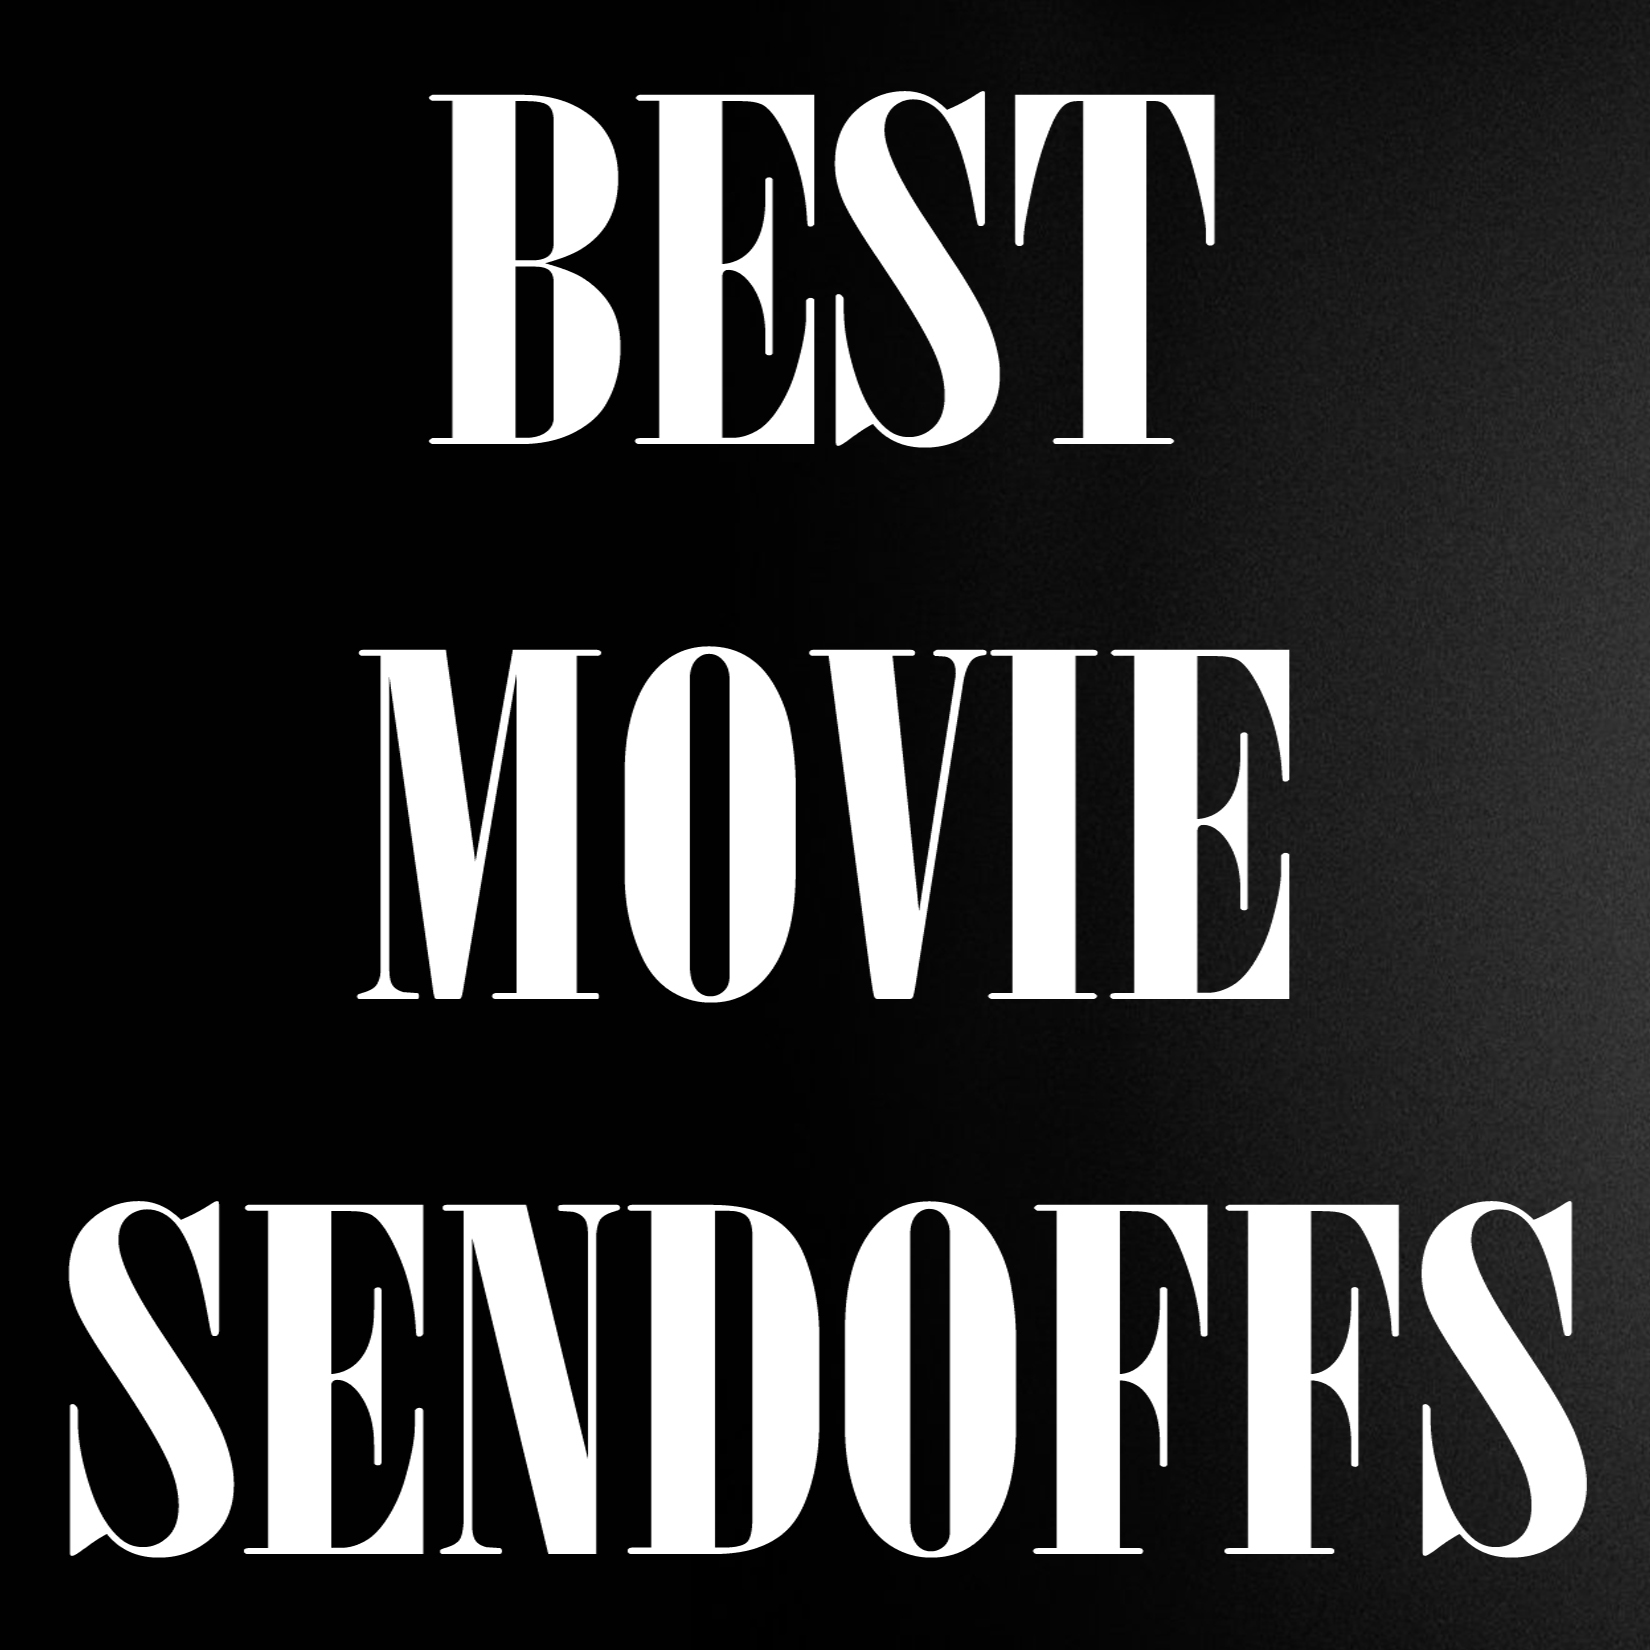 Episode 223: Best Movie Send-Offs